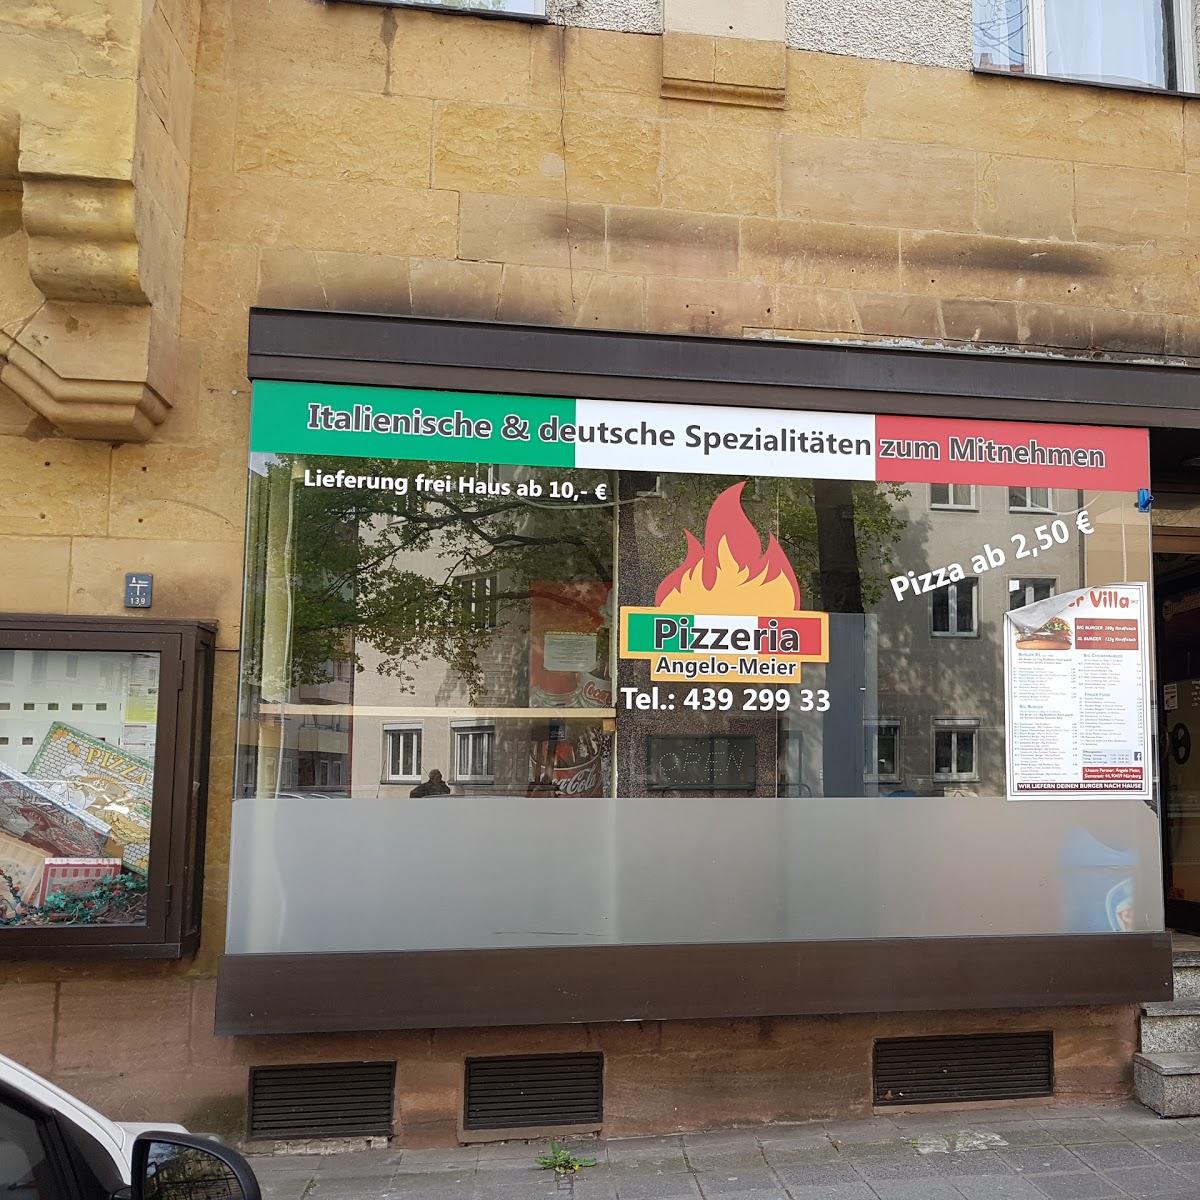 Restaurant "Angelo Meier Pizzeria" in Nürnberg